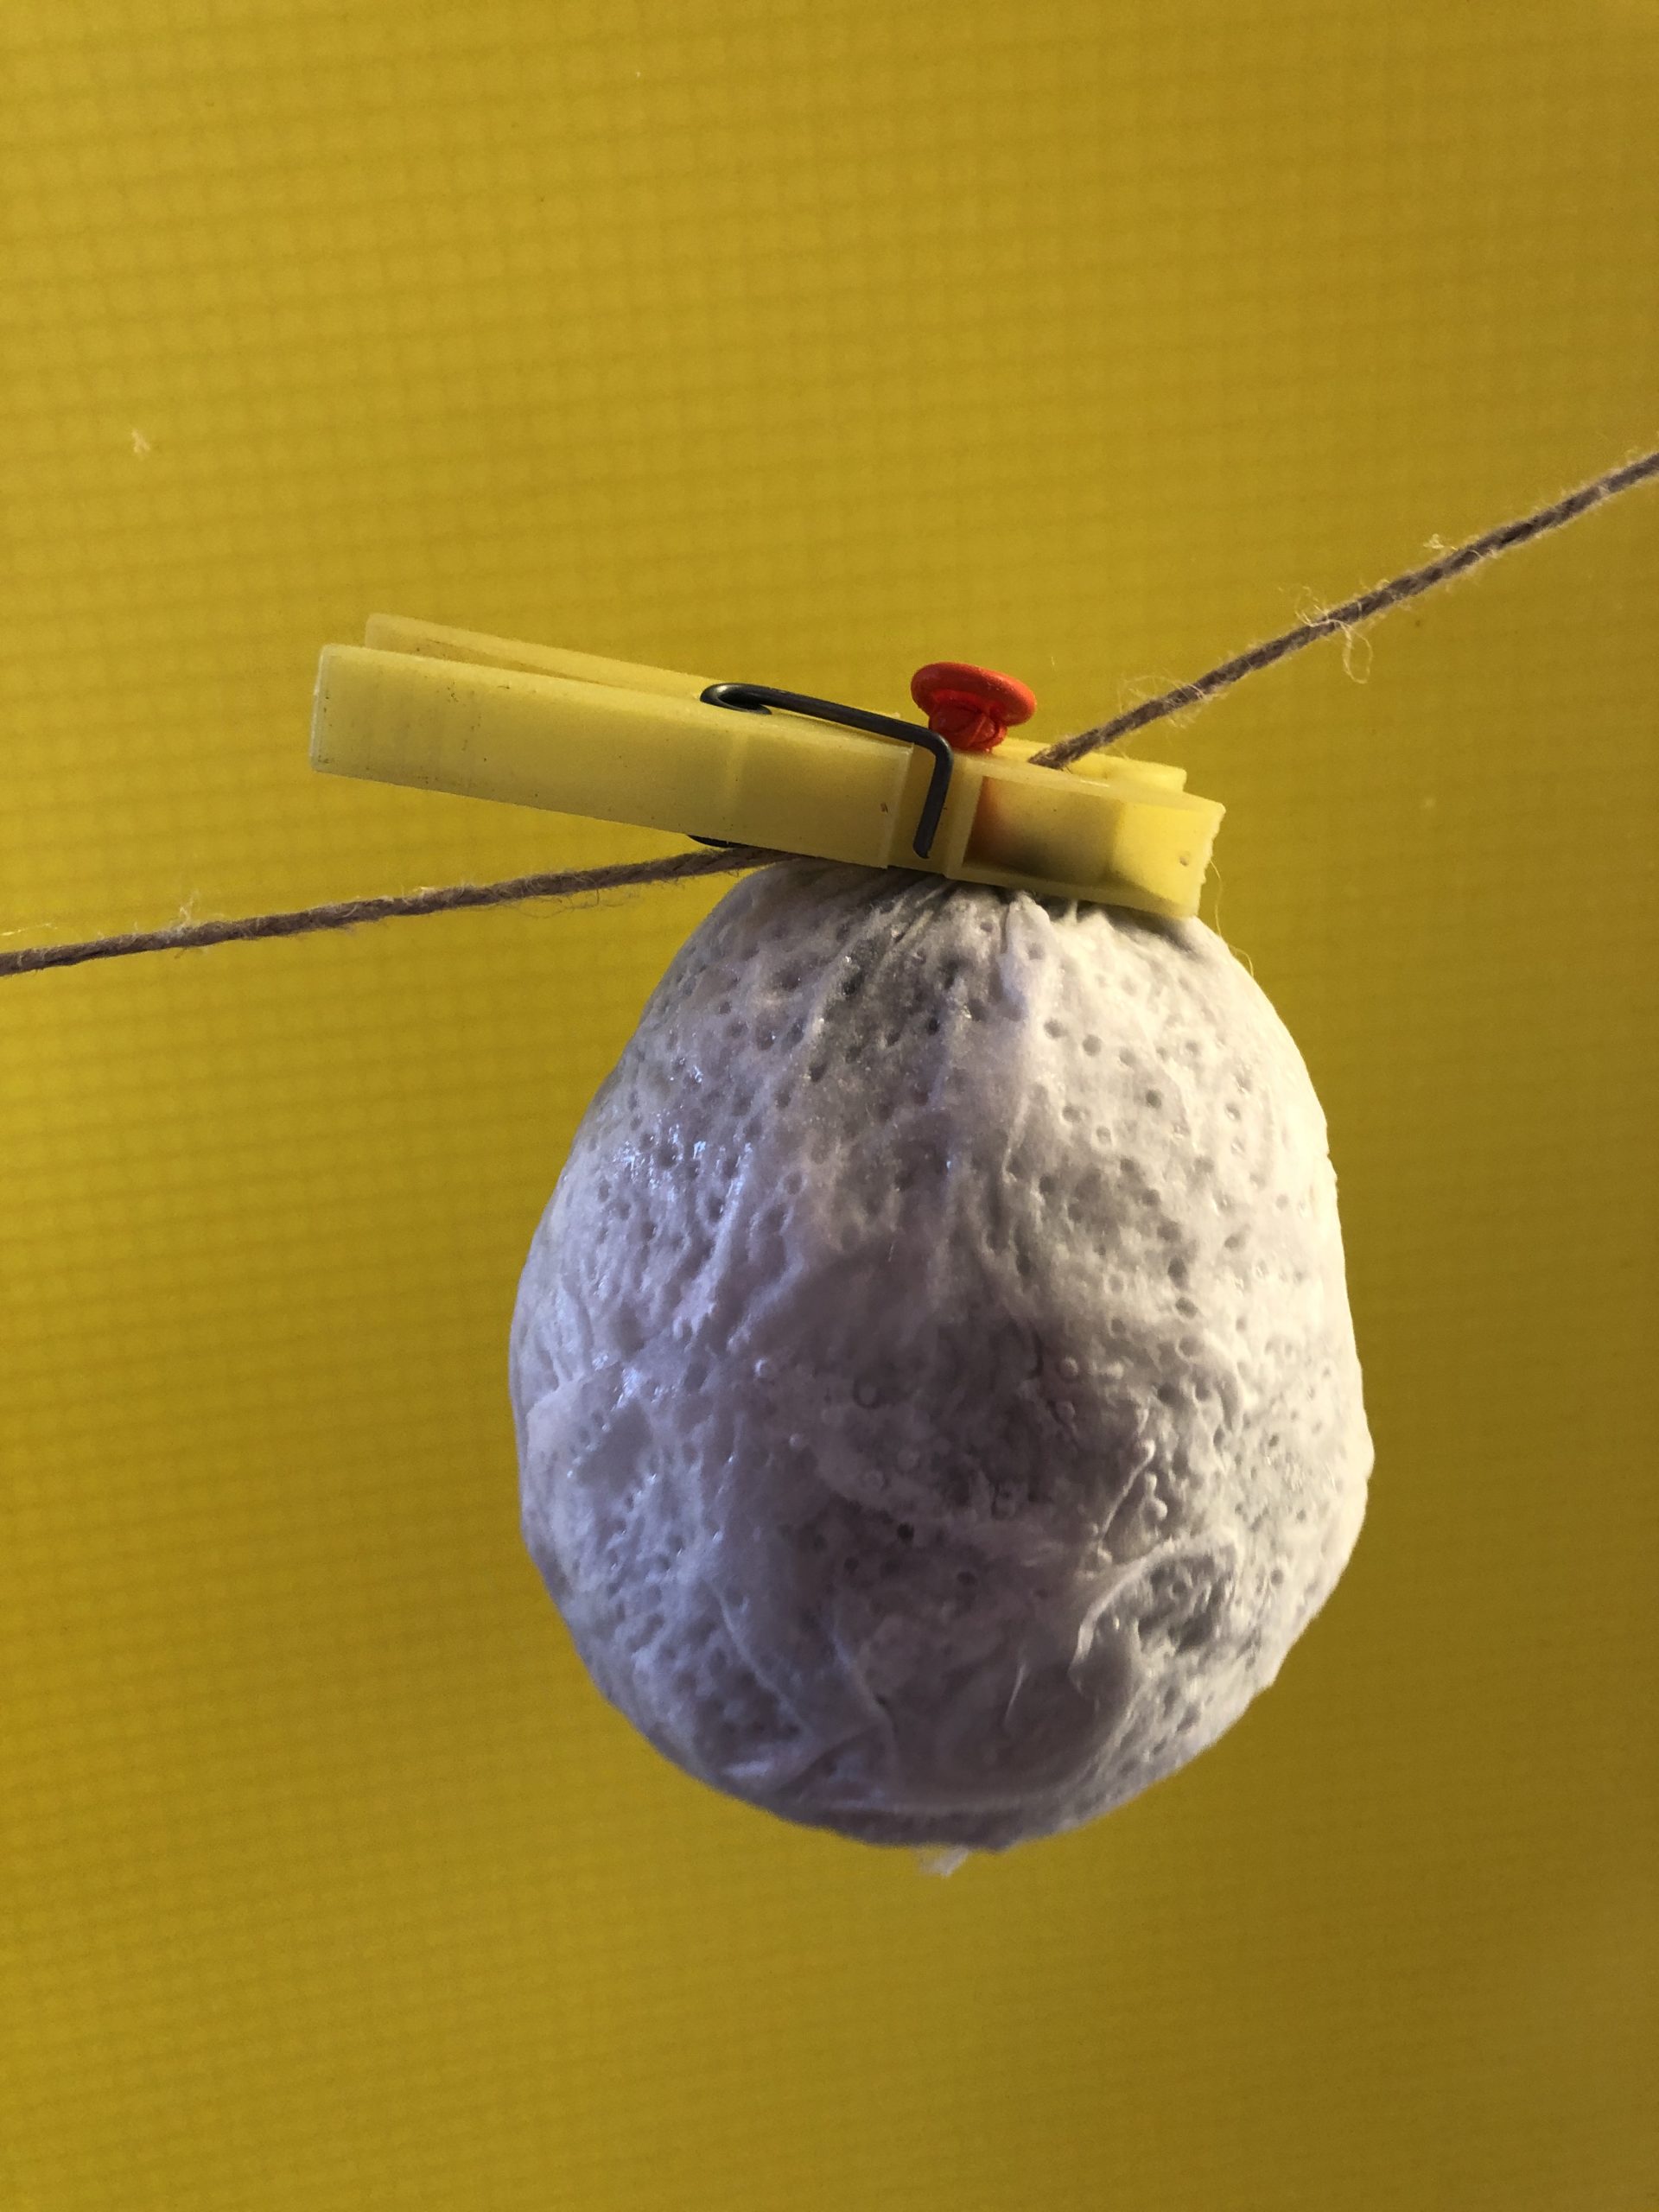 Bild zum Schritt 5 für das Bastel- und DIY-Abenteuer für Kinder: 'Den Luftballon am Knoten, mit einer Wäscheklammer, zum Trocknen aufhängen....'